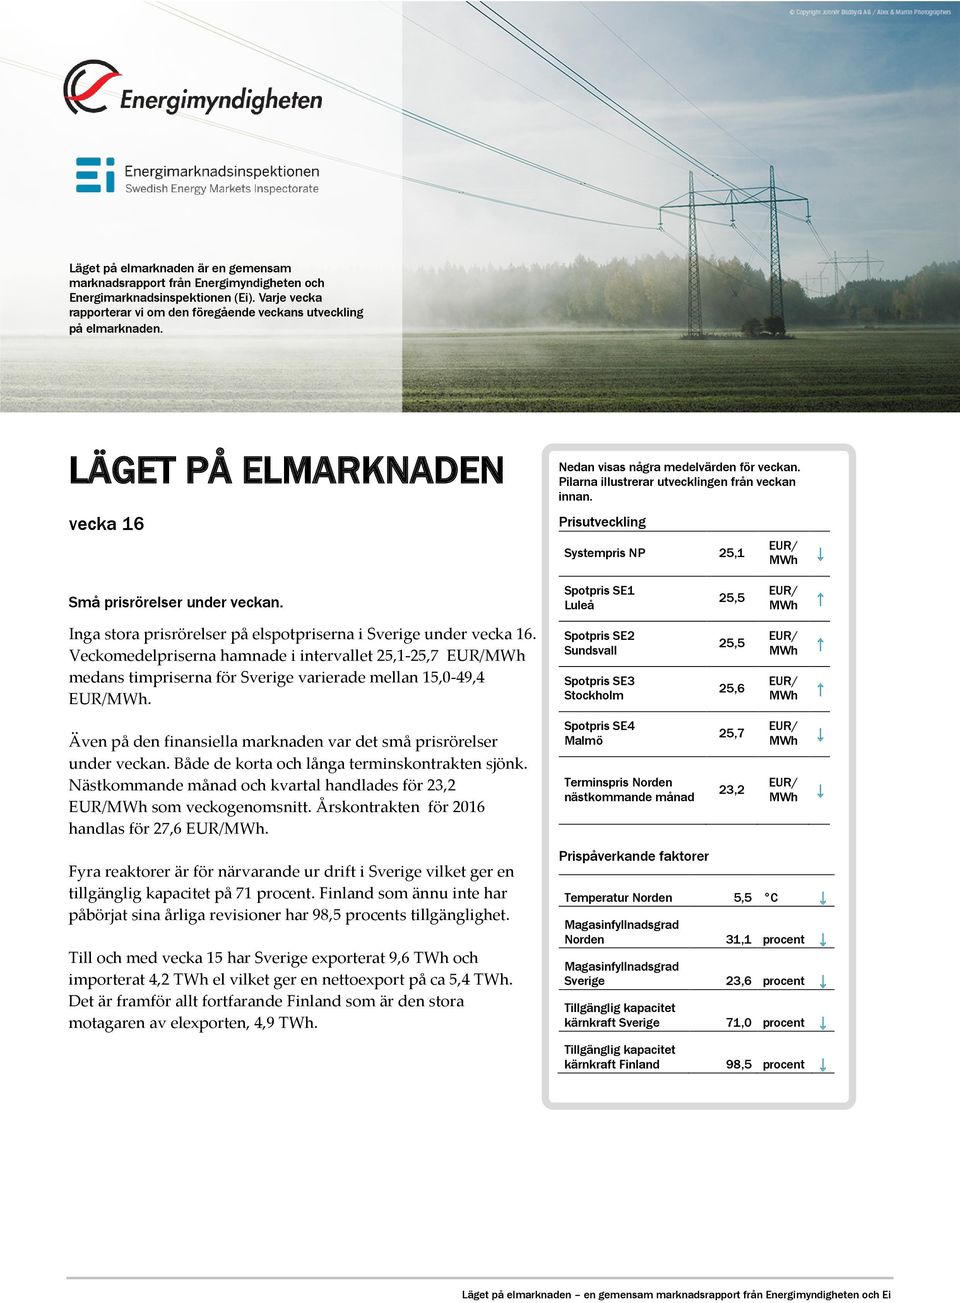 Inga stora prisrörelser på elspotpriserna i Sverige under vecka 16. Veckomedelpriserna hamnade i intervallet 25,1-25,7 EUR/MWh medans timpriserna för Sverige varierade mellan 15,0-49,4 EUR/MWh.